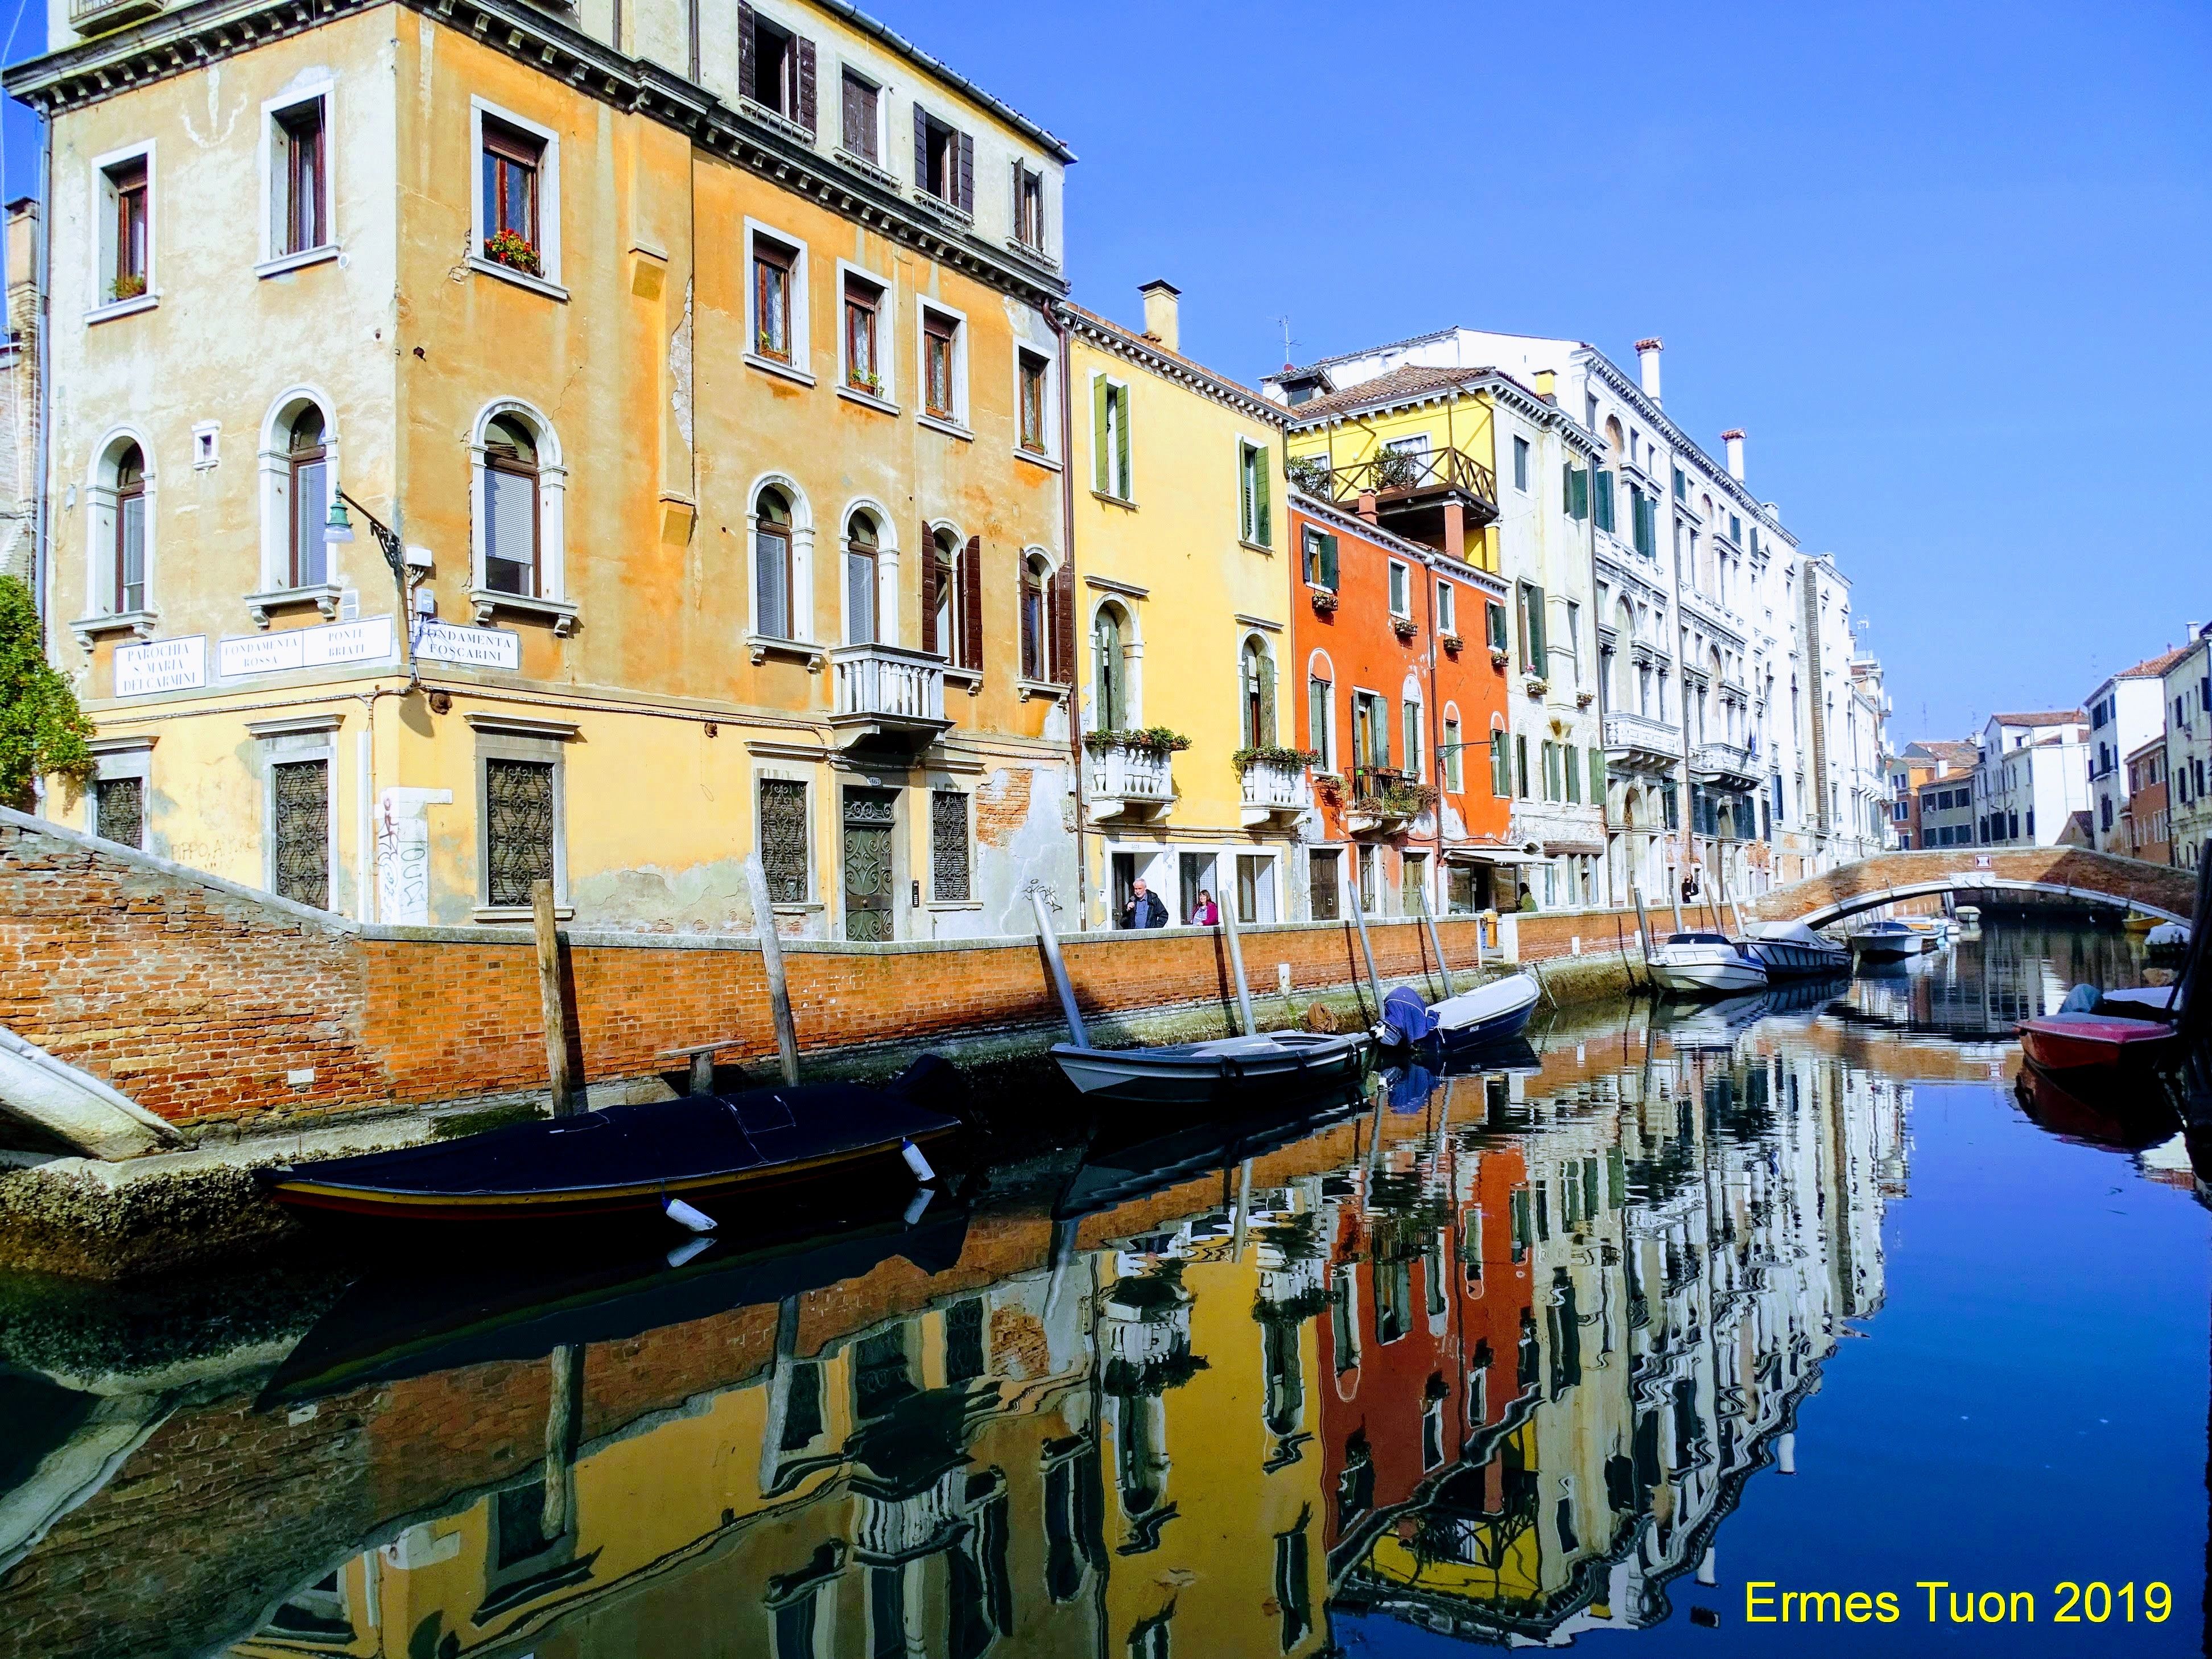 Caption: Venice, Rio dei Carmini, in a view from Palazzo Zenobio - Local guide @ermest